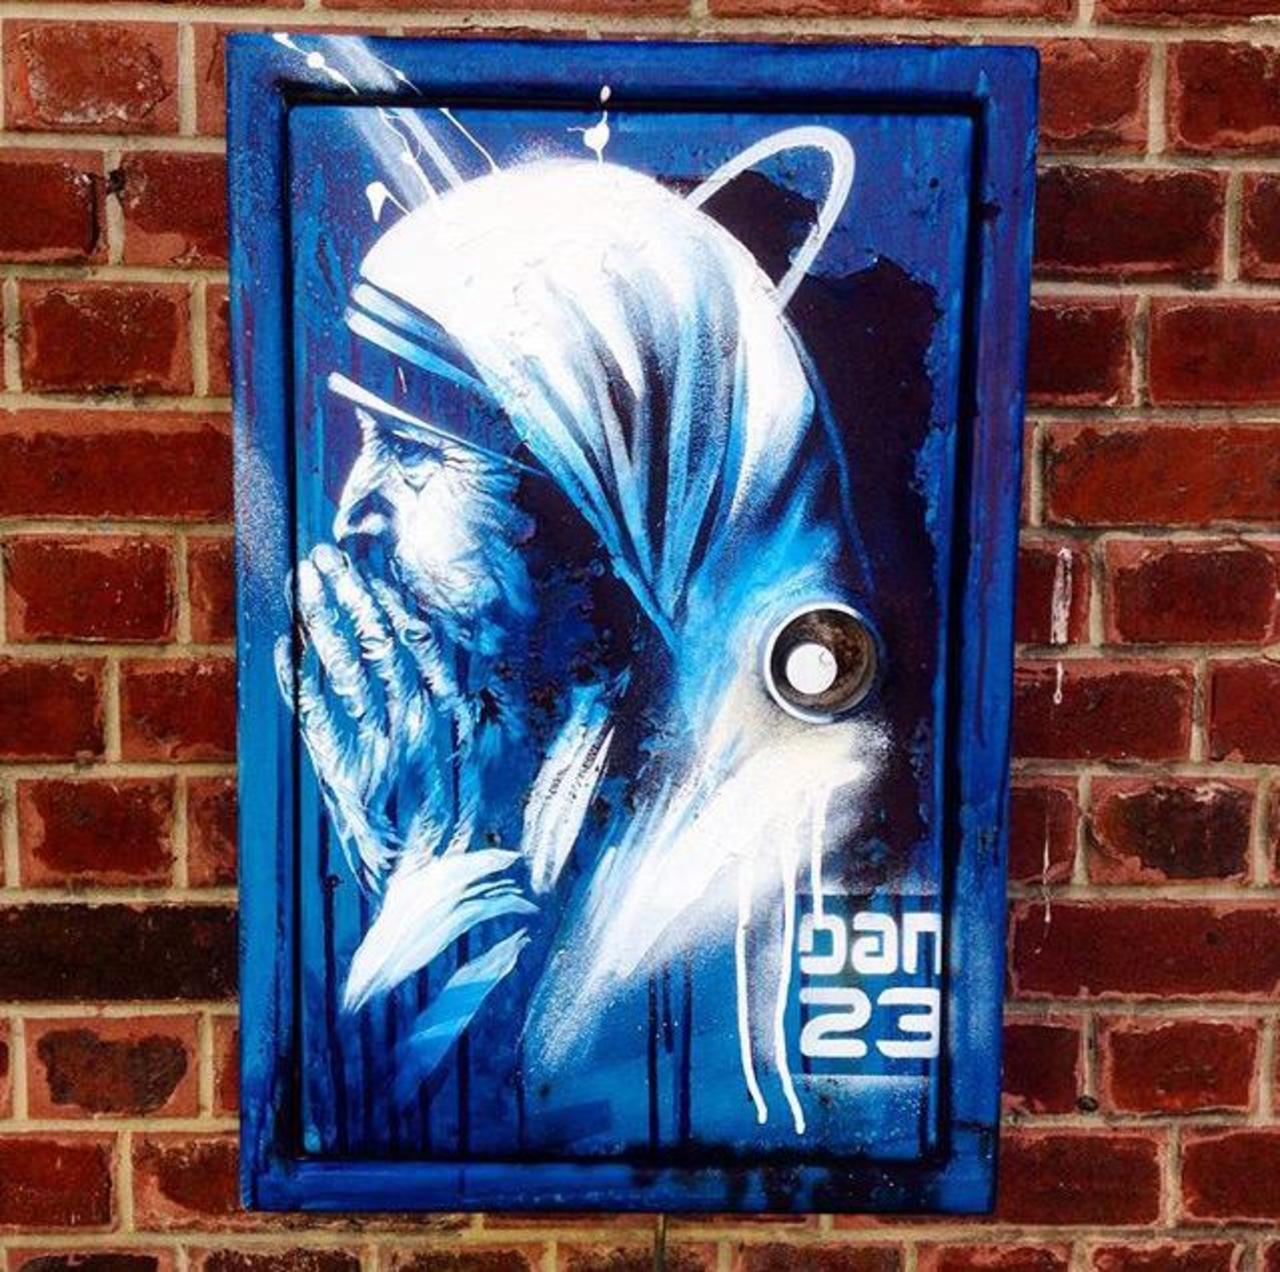 New Street Art 'Détail Spirit' by Dan23 

#art #graffiti #mural #streetart http://t.co/J3vC1iijFf googlestreetart chinatoniq